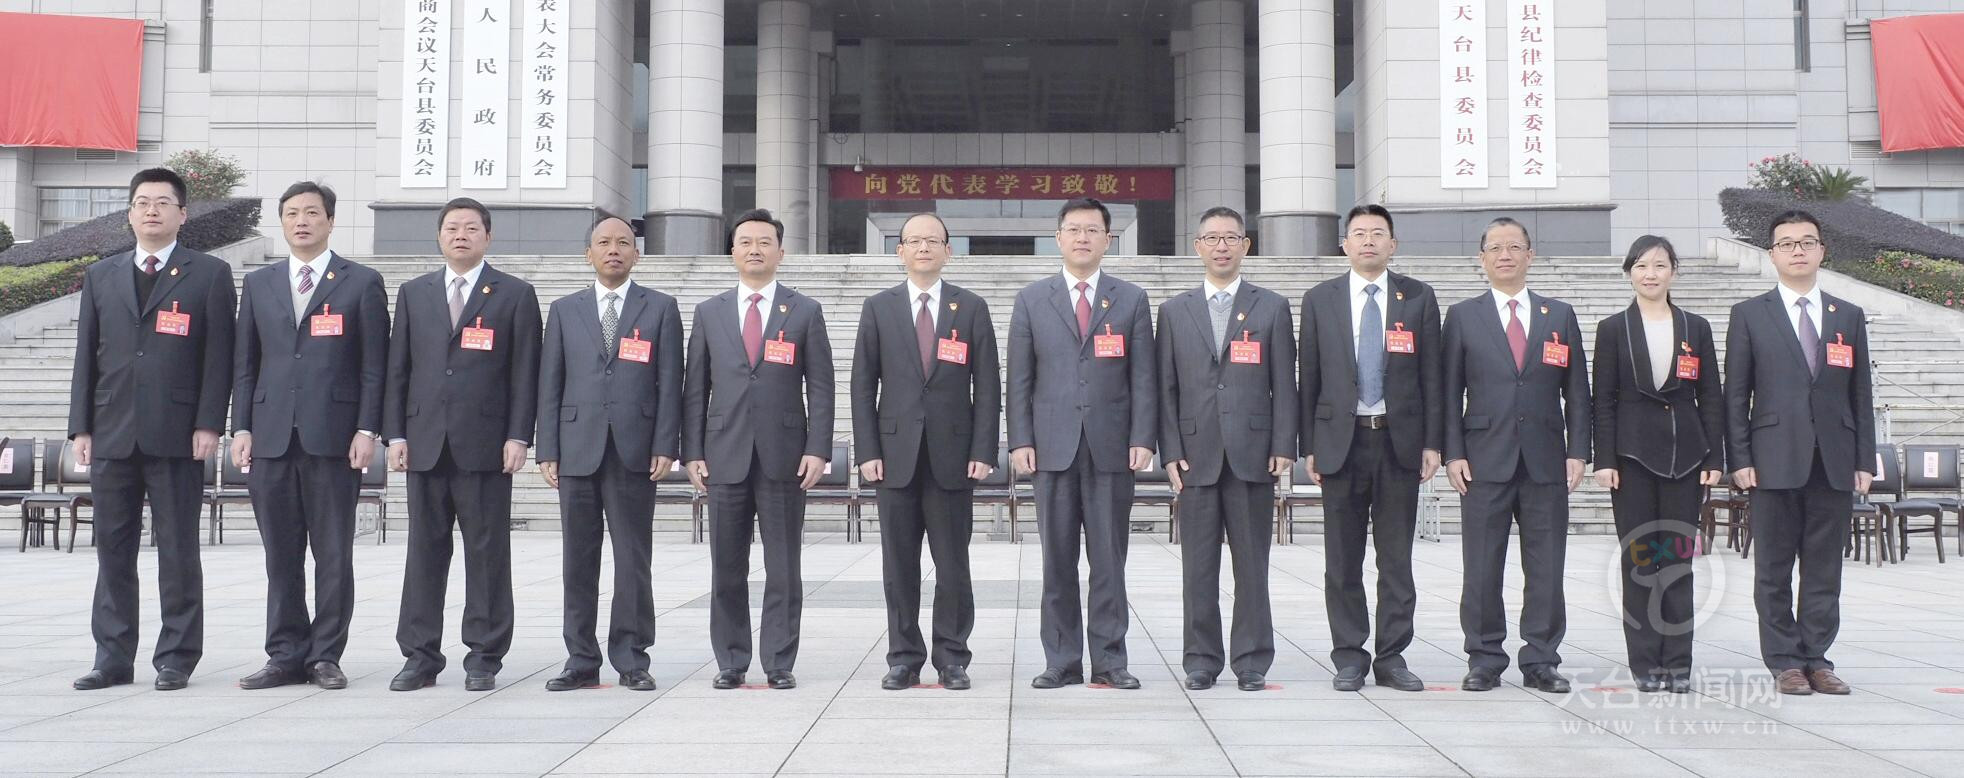 新一届县委常委(左起):陈剑,陈益军,郑志兵,余昌杰,崔波,管文新